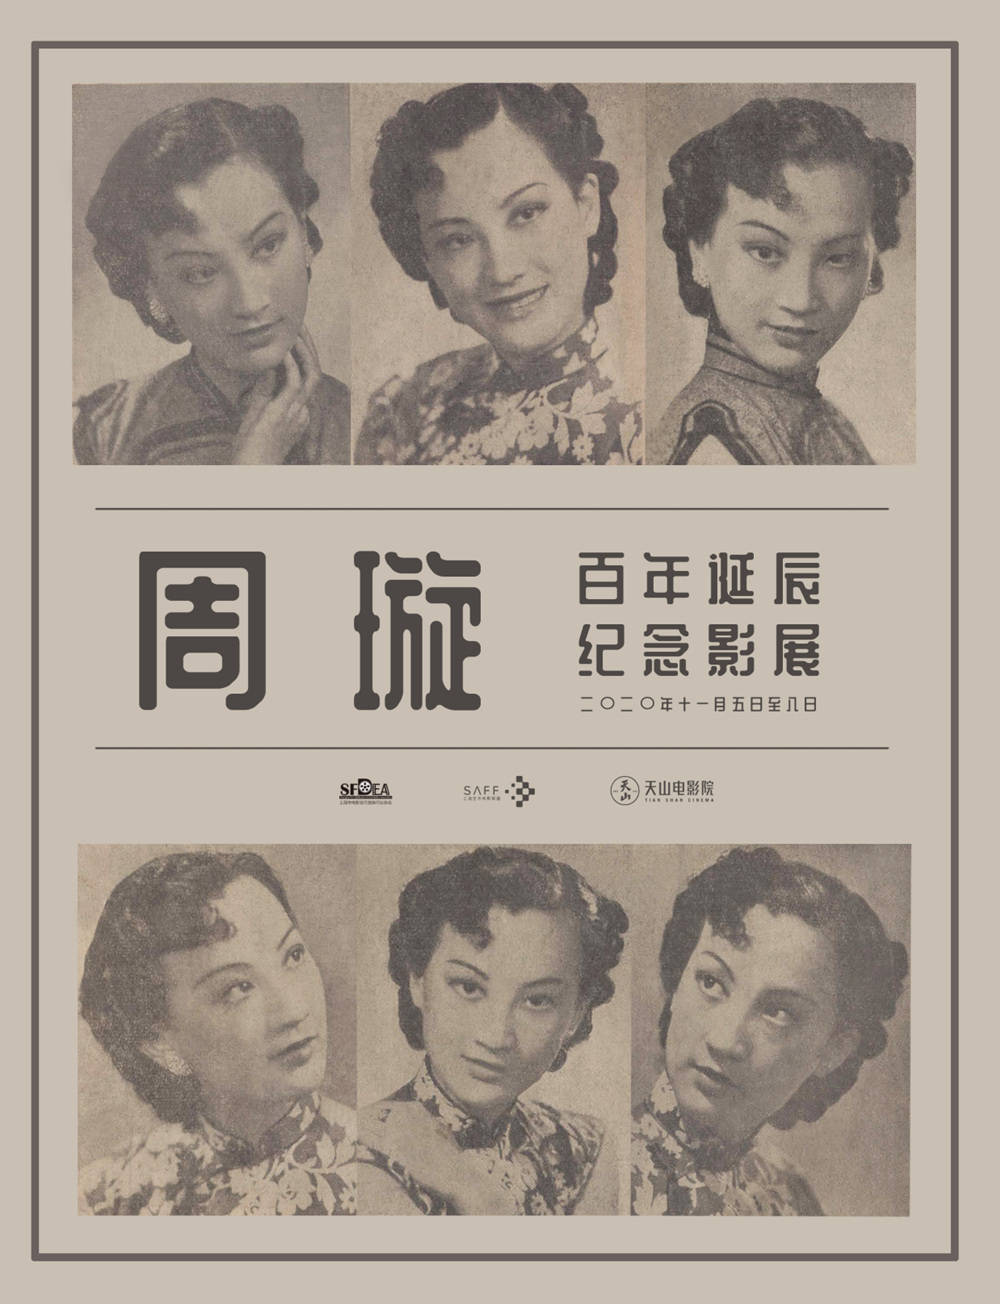 7部经典老电影致敬周璇百年11月上海影展更显海派文化